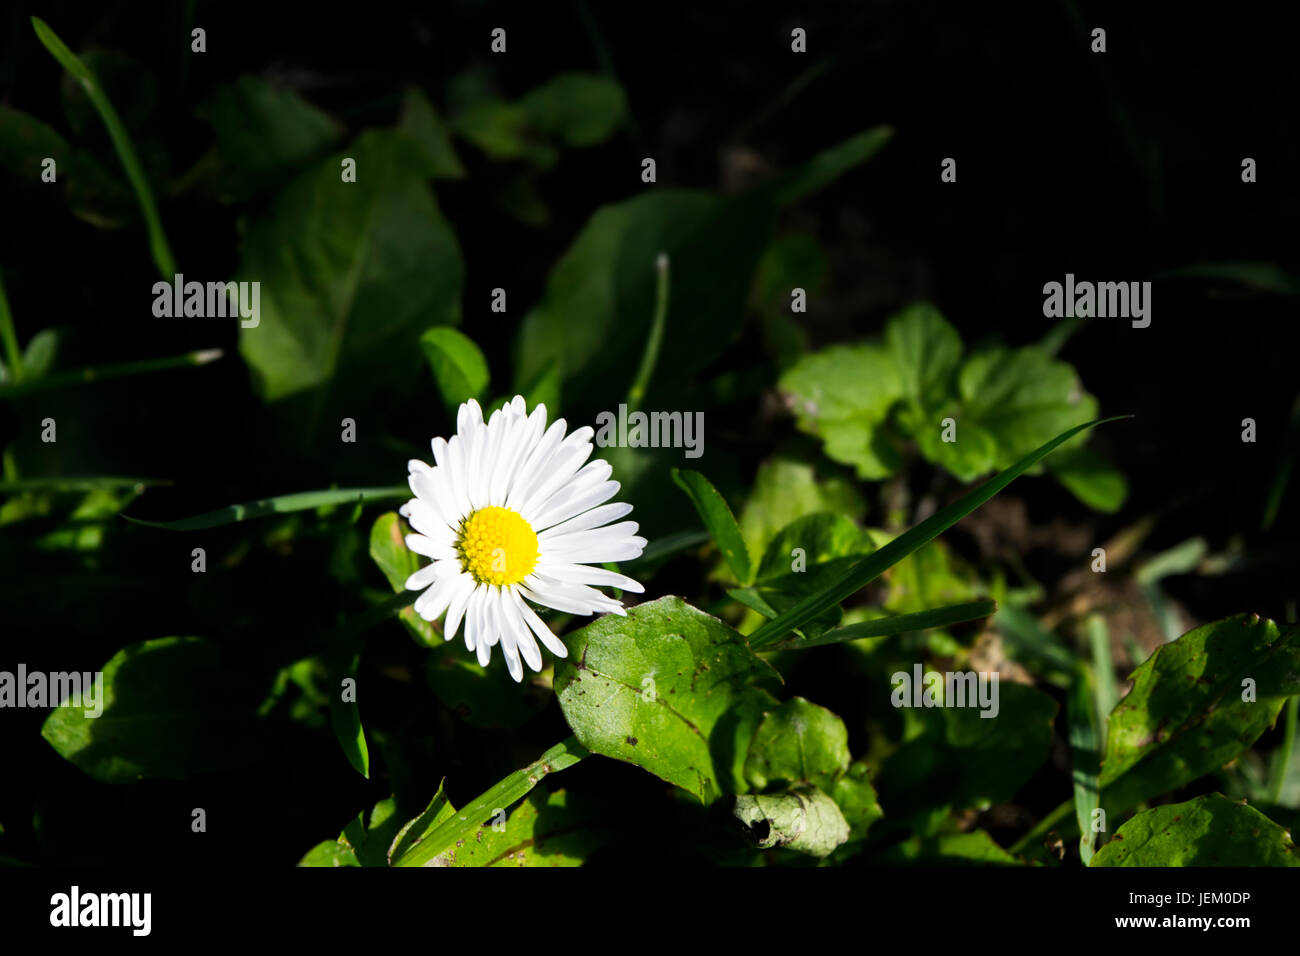 Einfache, aber elegante Daisy Blume genommen bei künstlichem Licht in der Nacht. Stockfoto